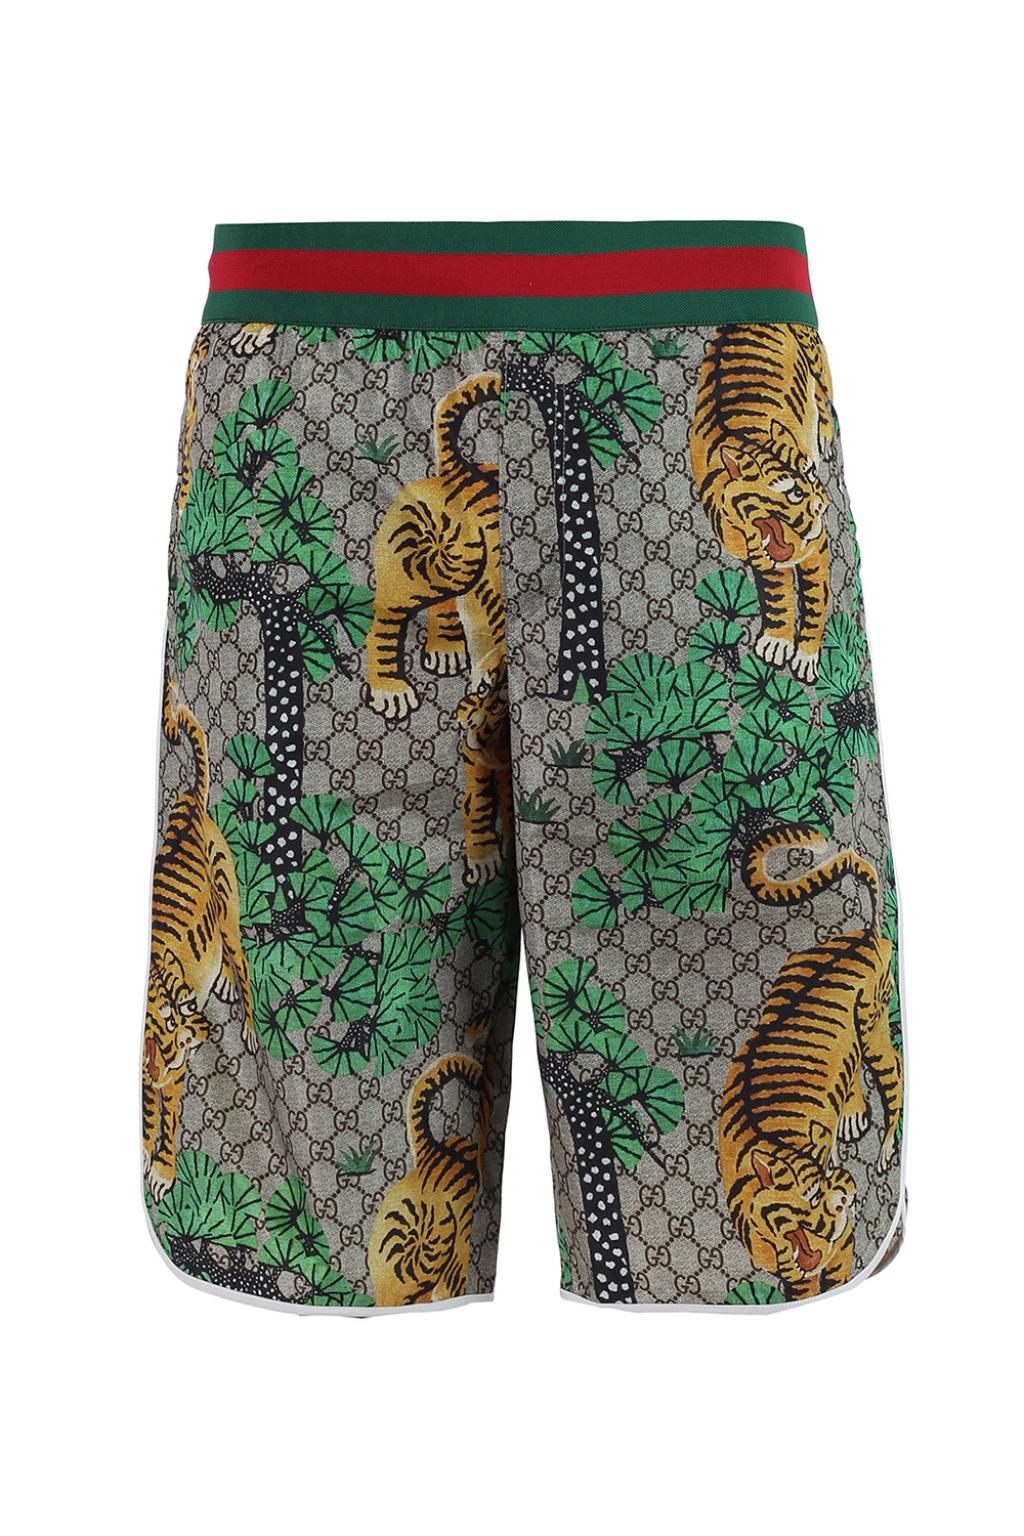 Bengal' pattern shorts Gucci - Vitkac US